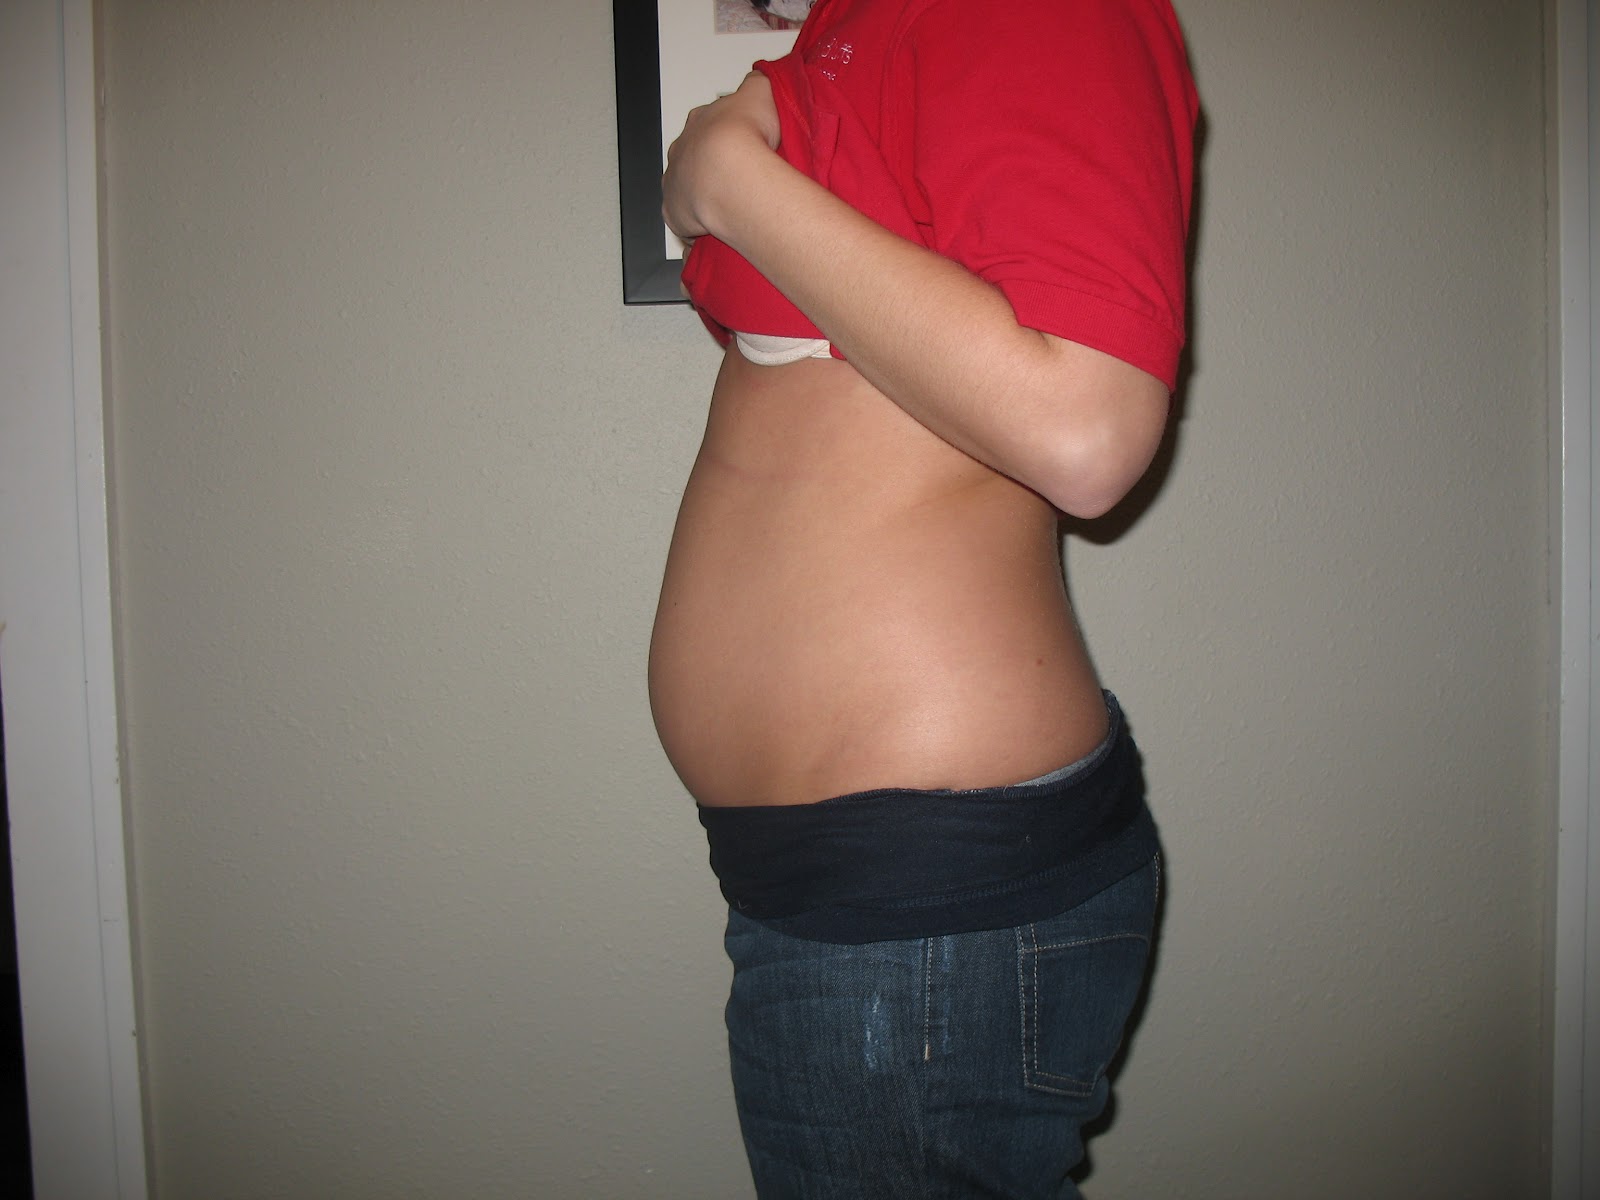 13 1 неделя беременности